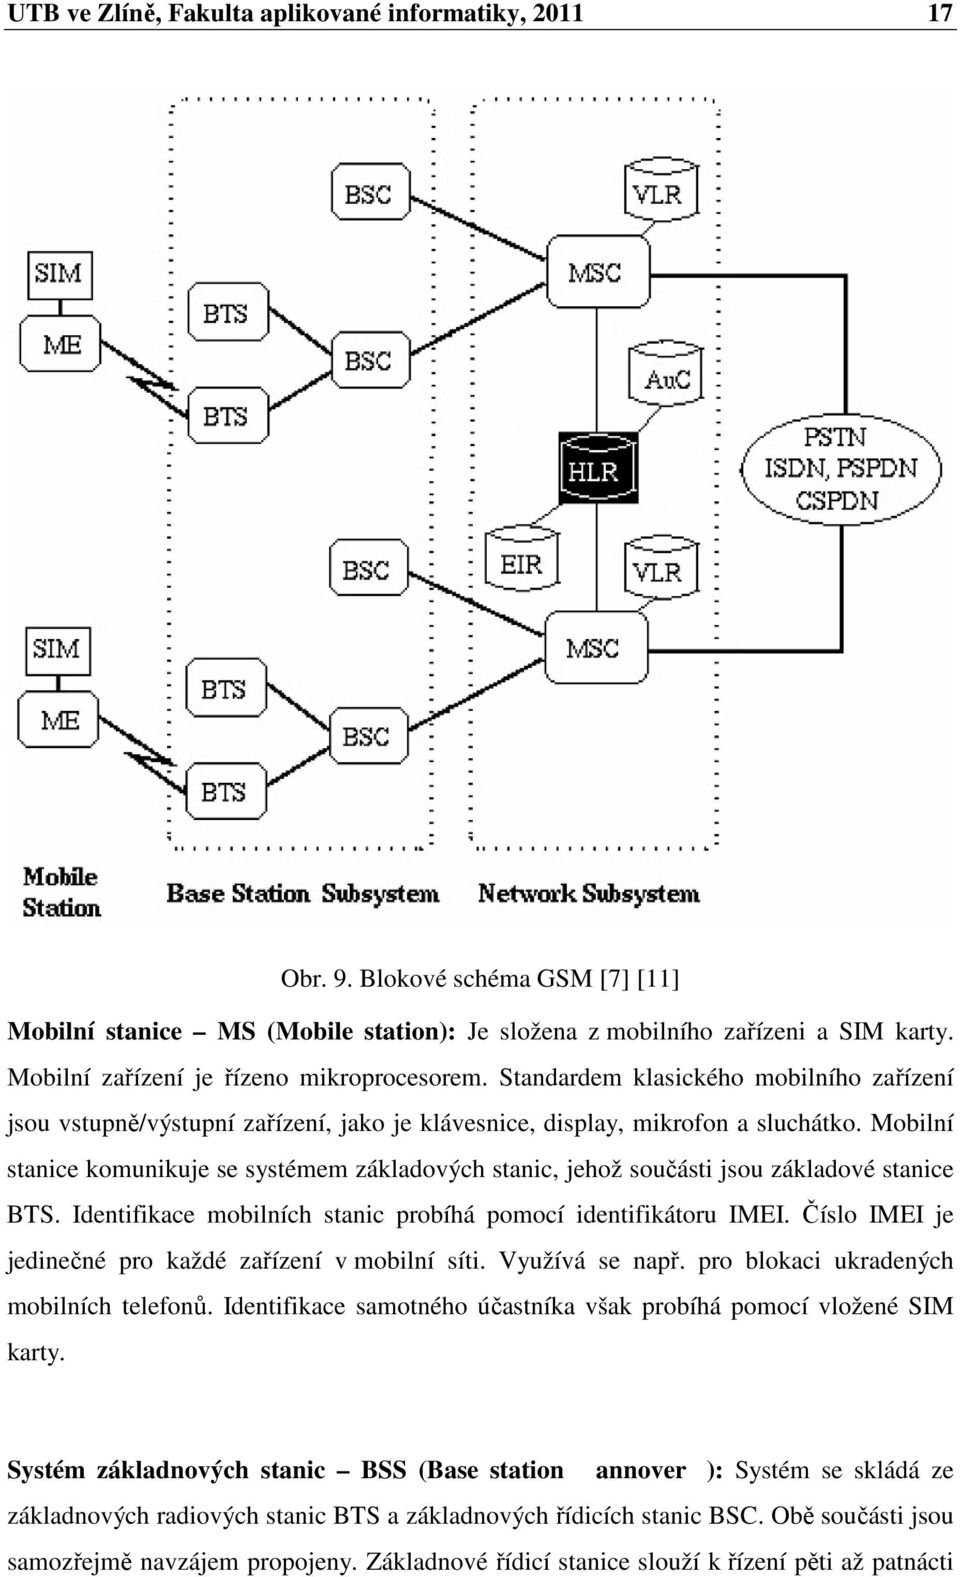 Mobilní stanice komunikuje se systémem základových stanic, jehož součásti jsou základové stanice BTS. Identifikace mobilních stanic probíhá pomocí identifikátoru IMEI.